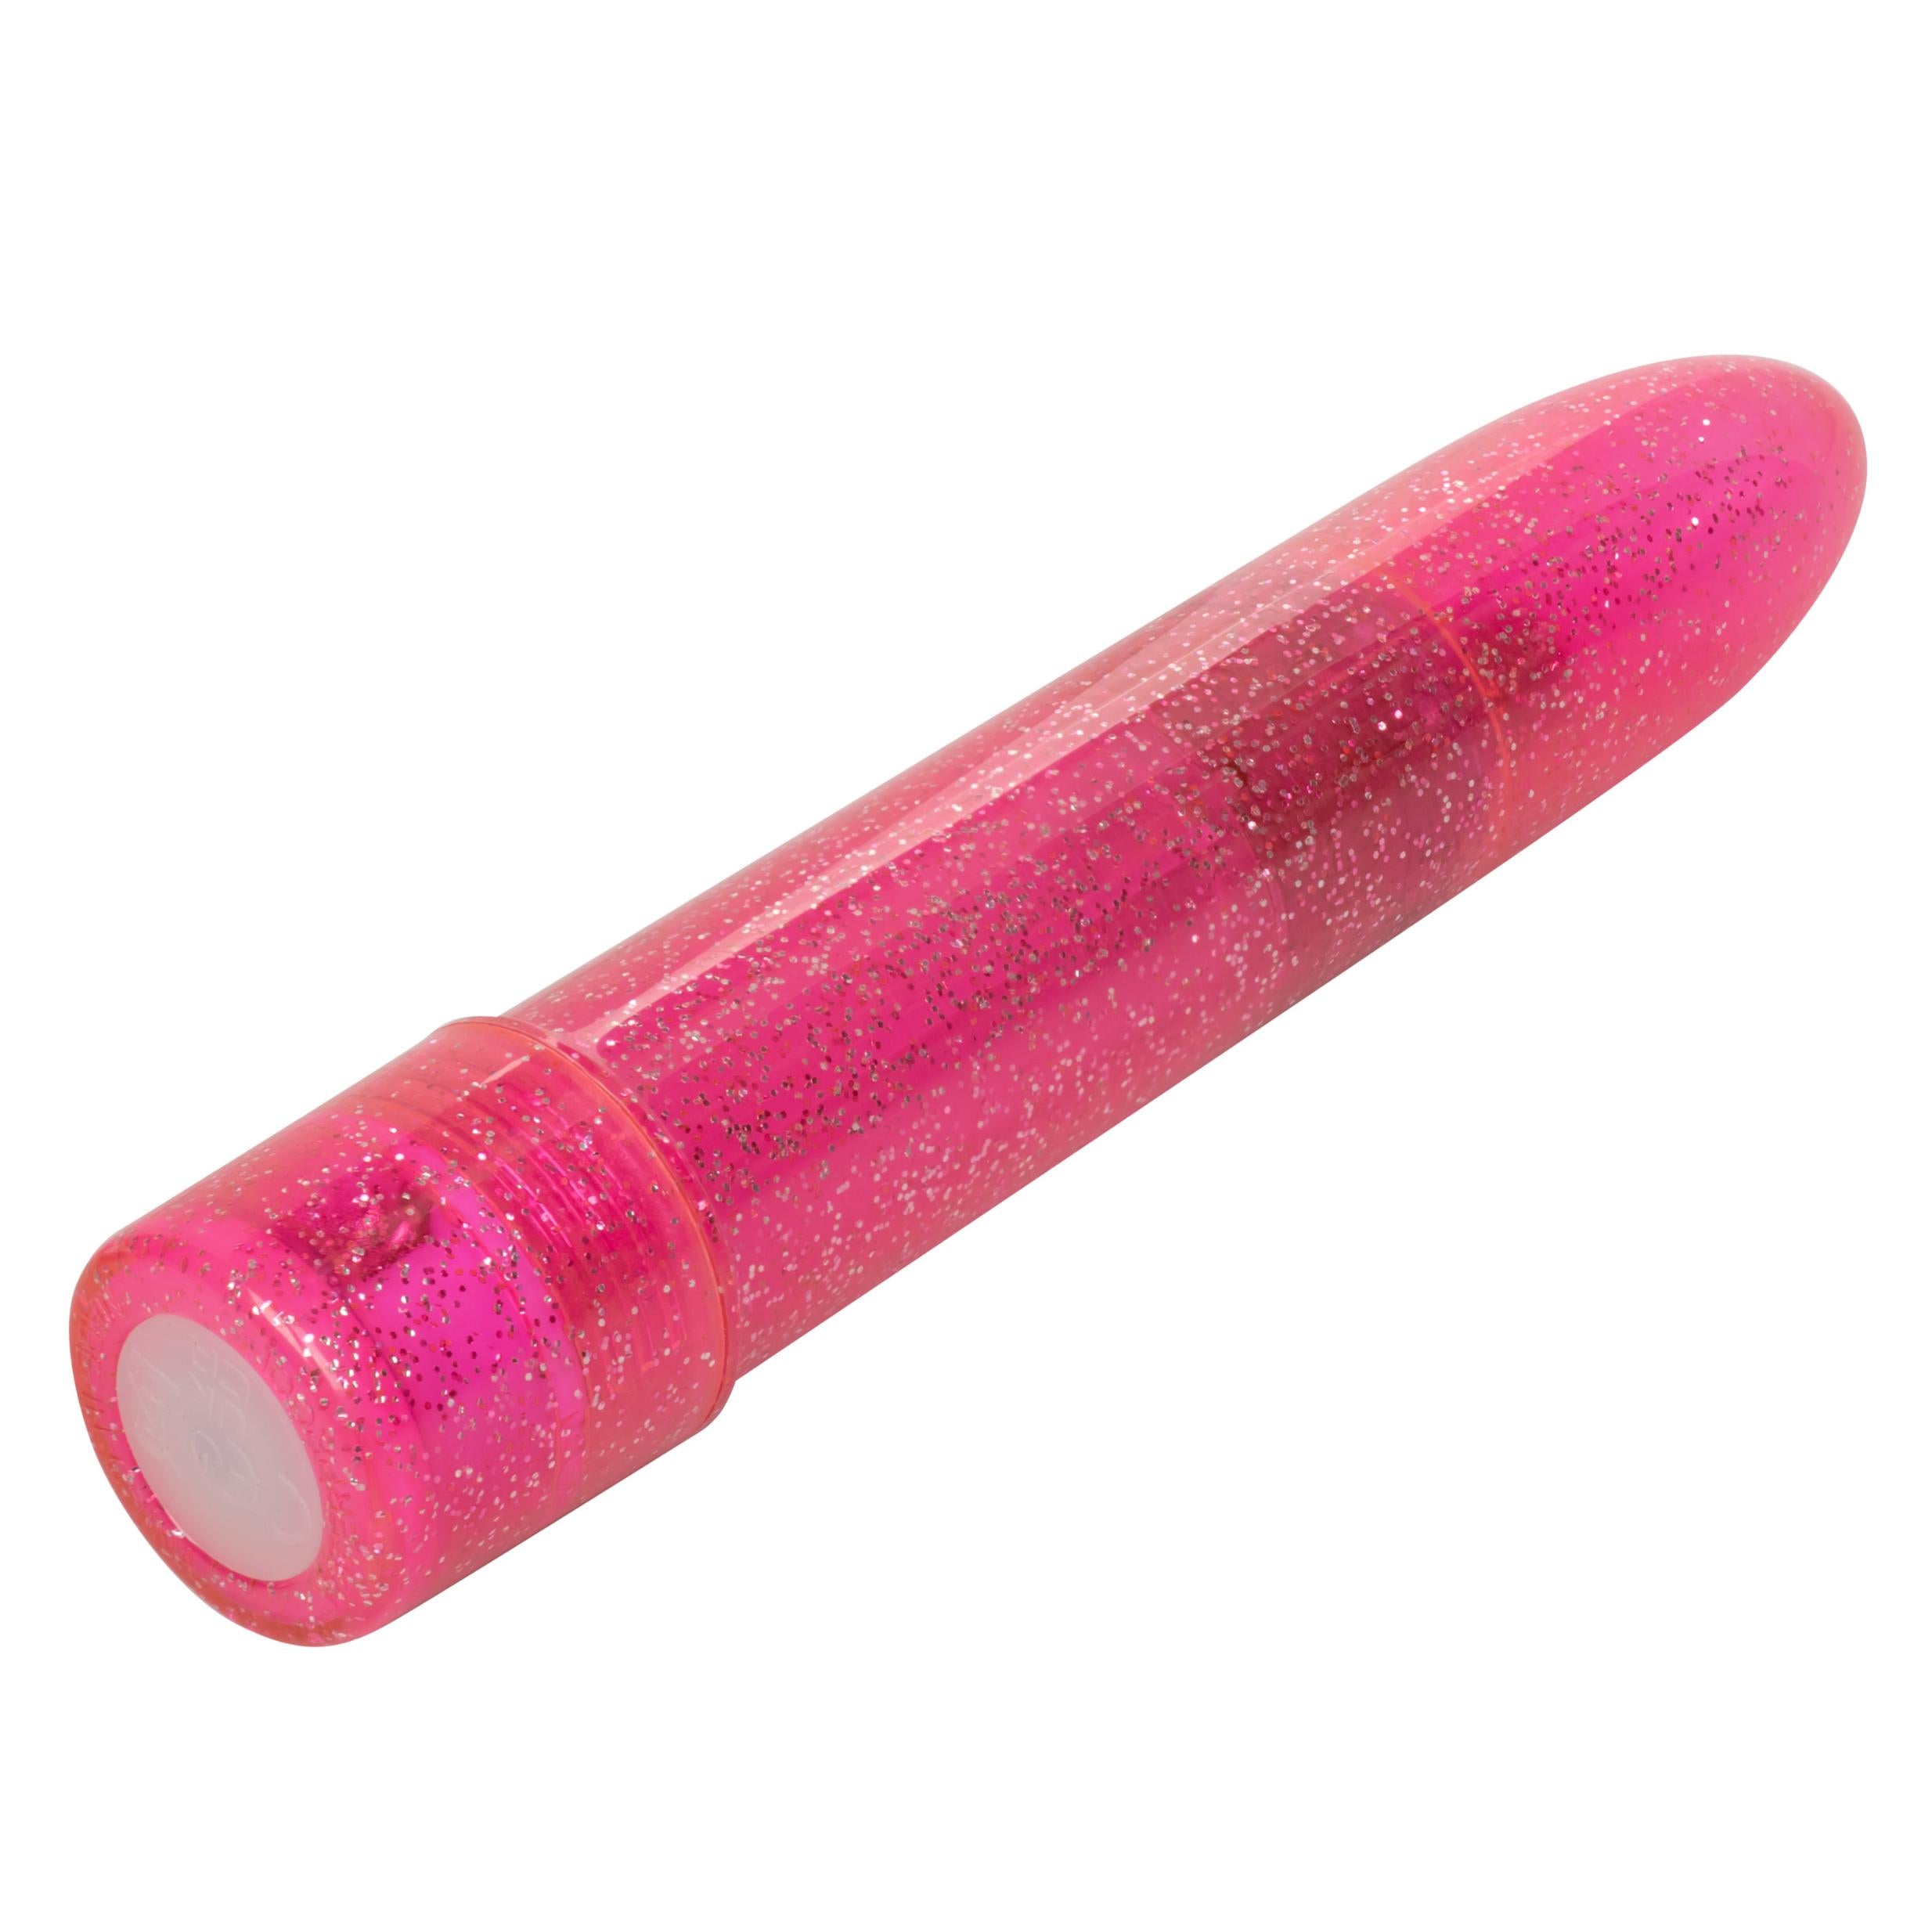 Sparkle Mini Vibrator - Pink